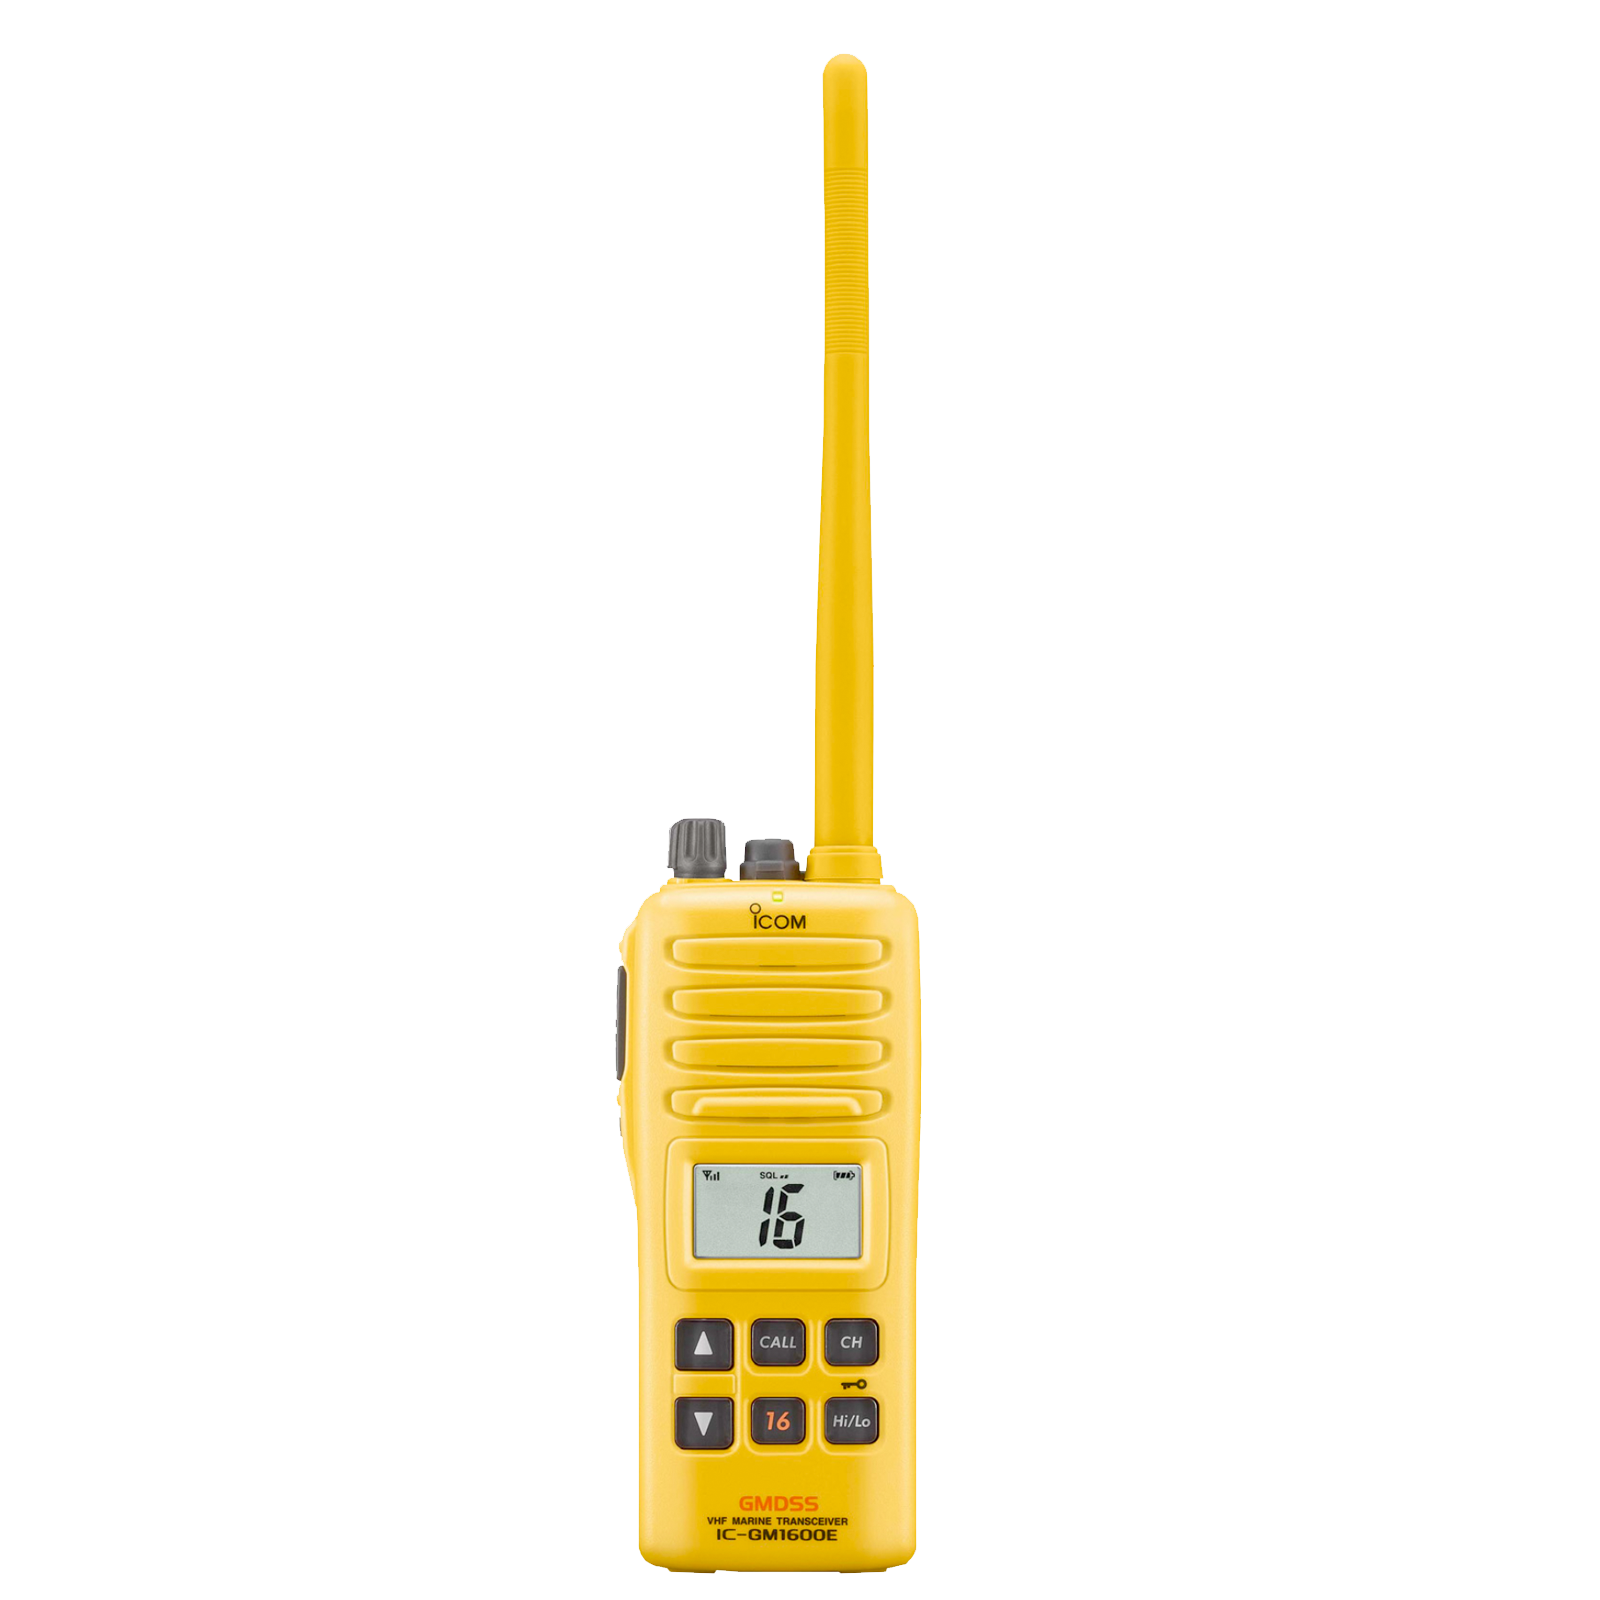 Telestar System Telecommunications Rome (Italy) Radio GMDSS ICOM per la comunicazione in barca adatte a qualsiasi tipo di esigenza nautica